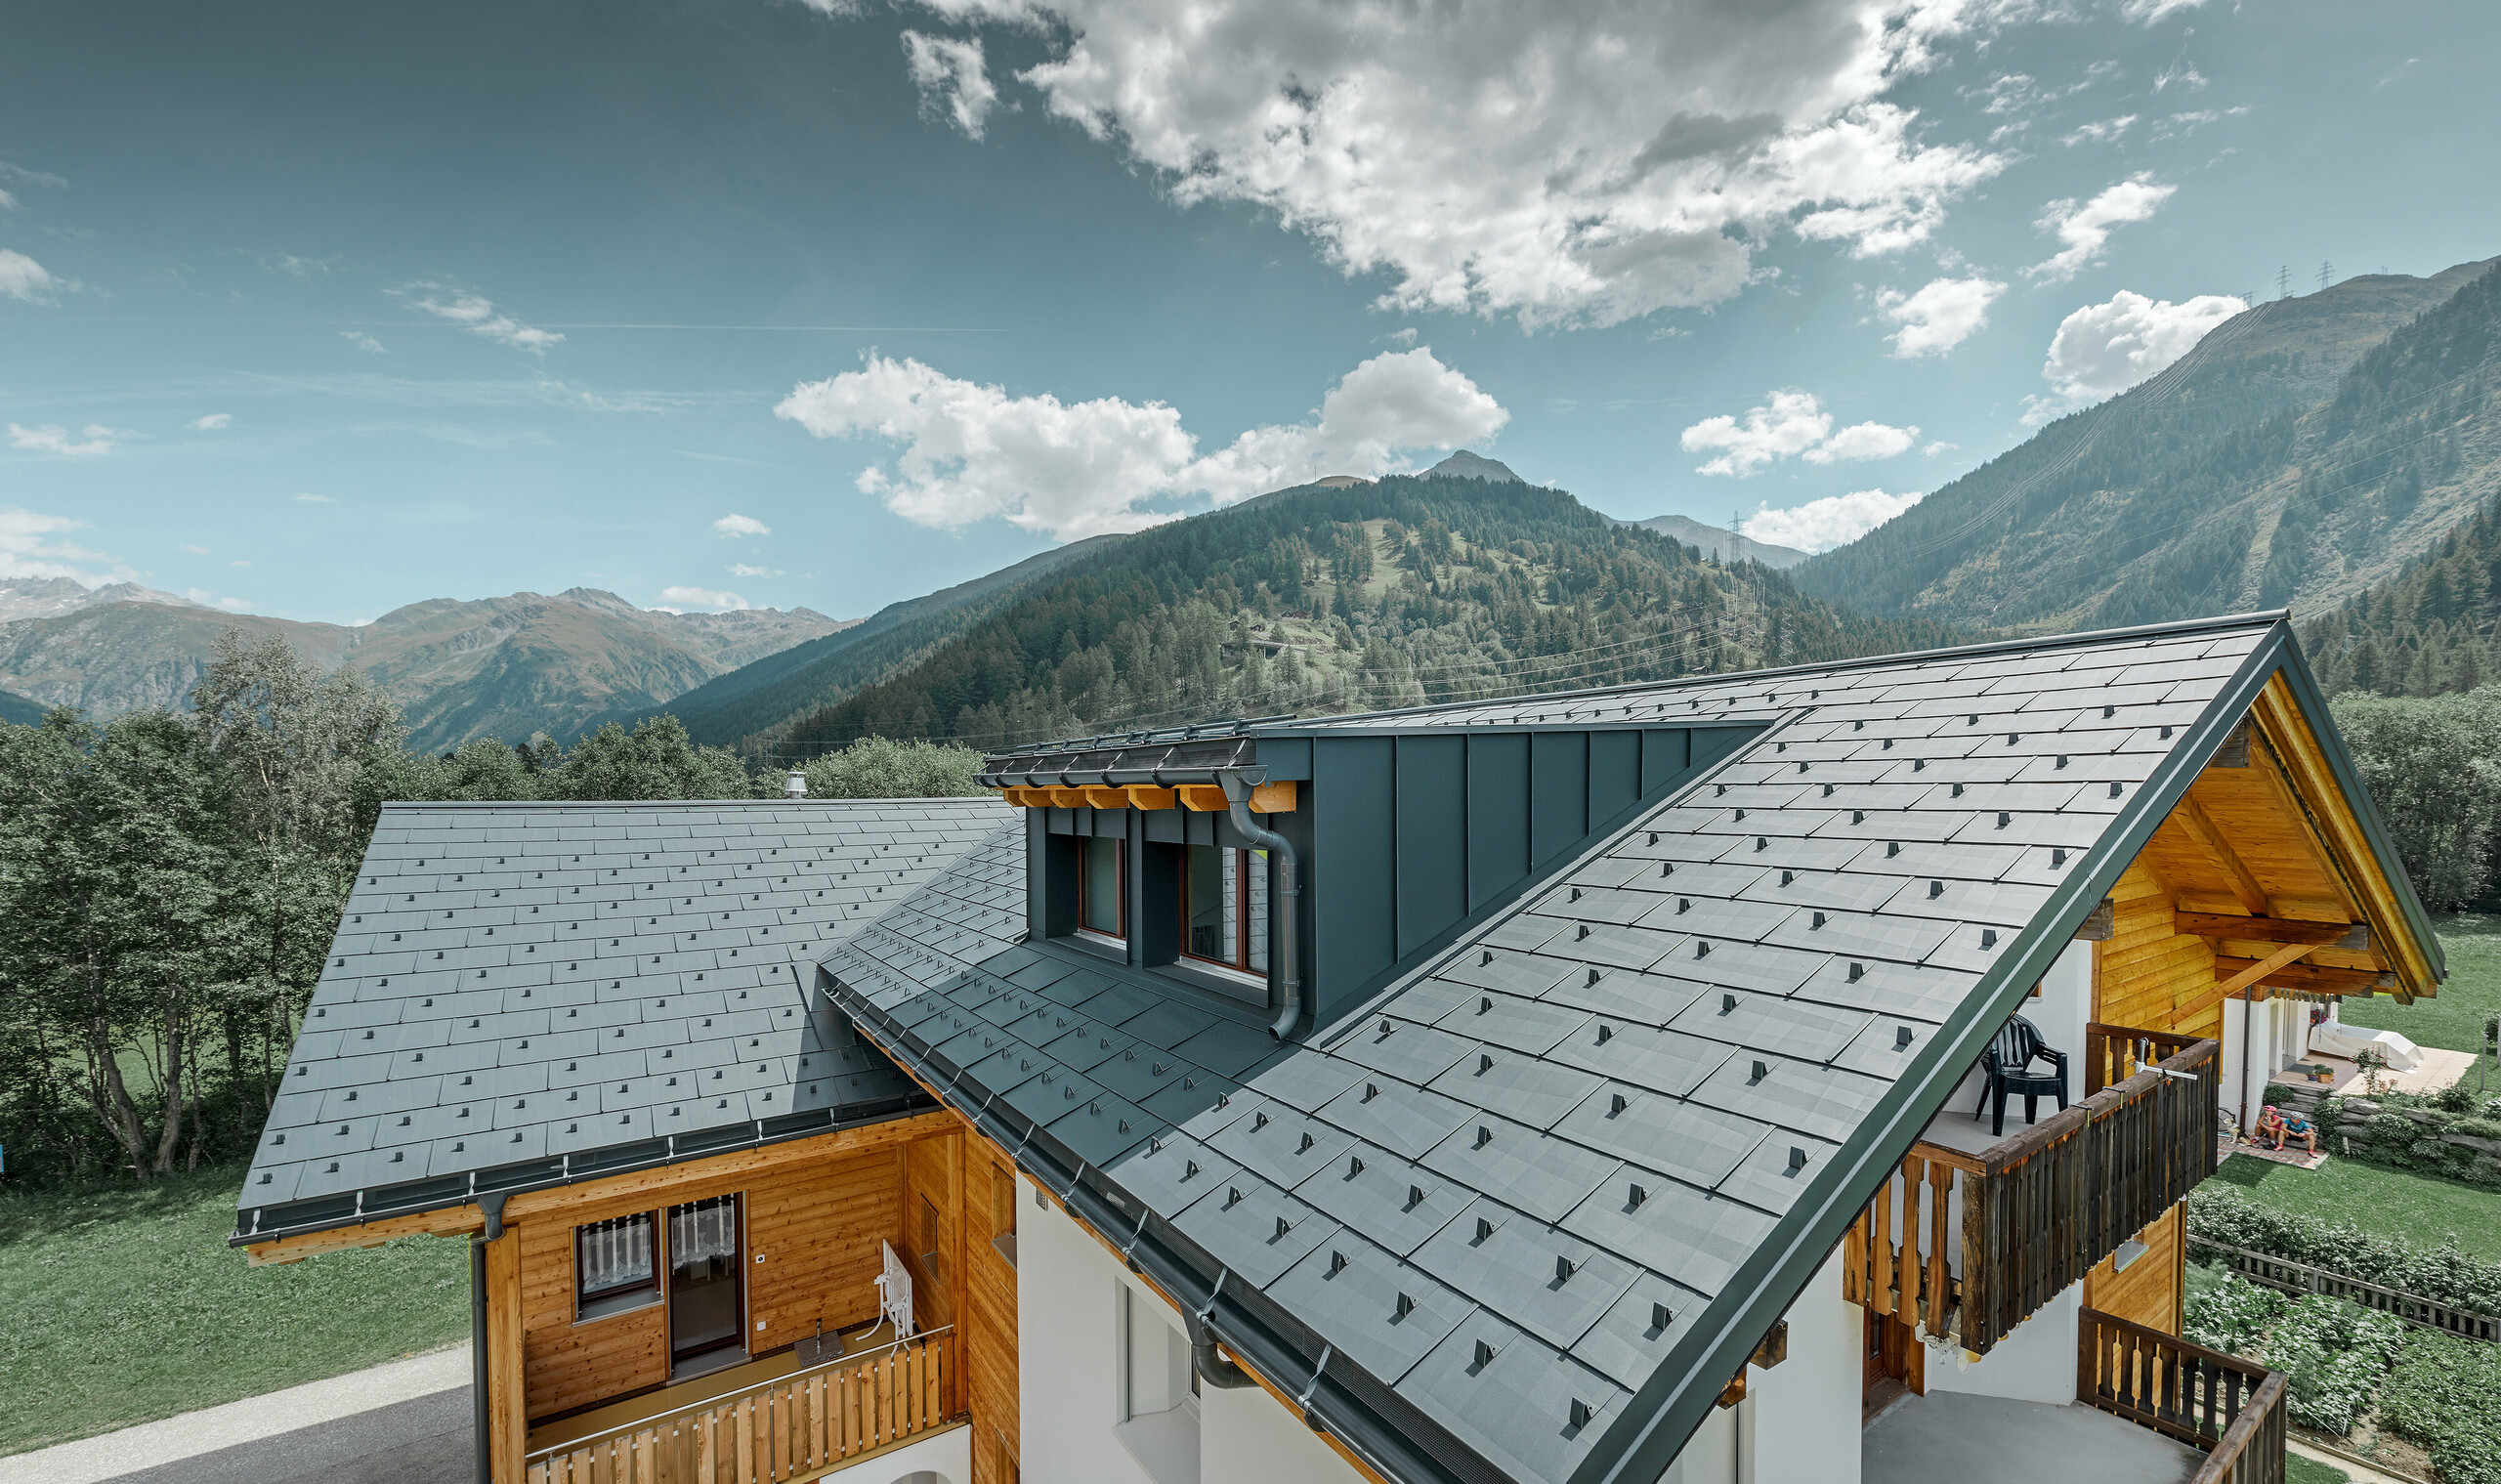 Nieuw gerenoveerd woonhuis met zadeldak en dakkapel; de dakrenovatie werd uitgevoerd met het PREFA dakpaneel FX.12 in antraciet.